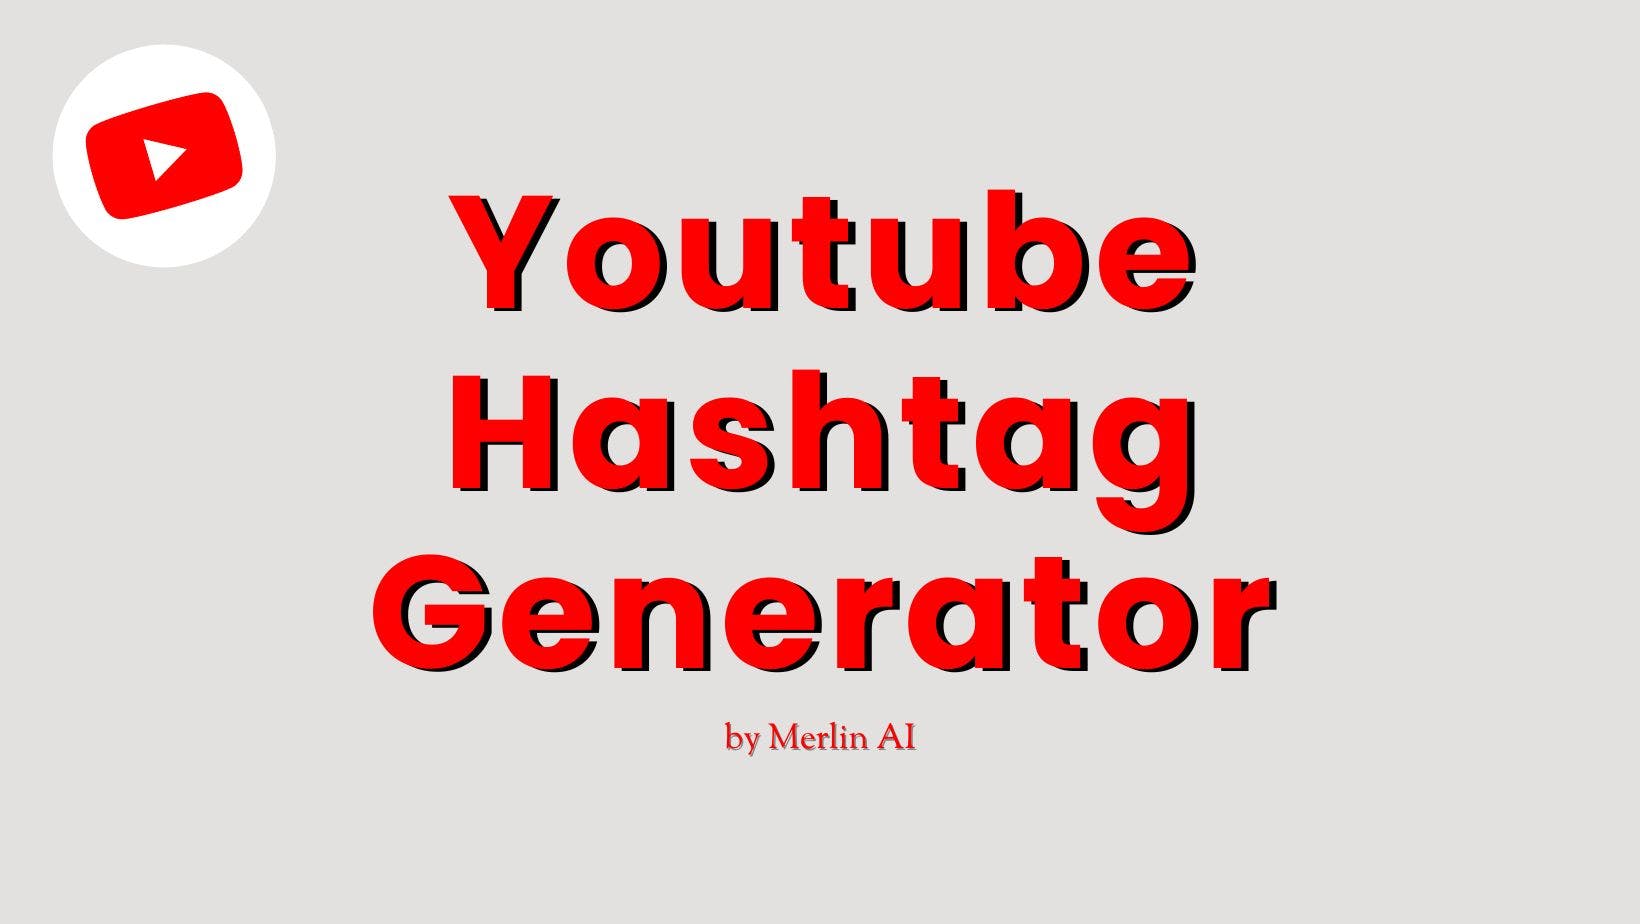 Cover Image for Générateur de hashtags gratuit pour YouTube par Merlin AI